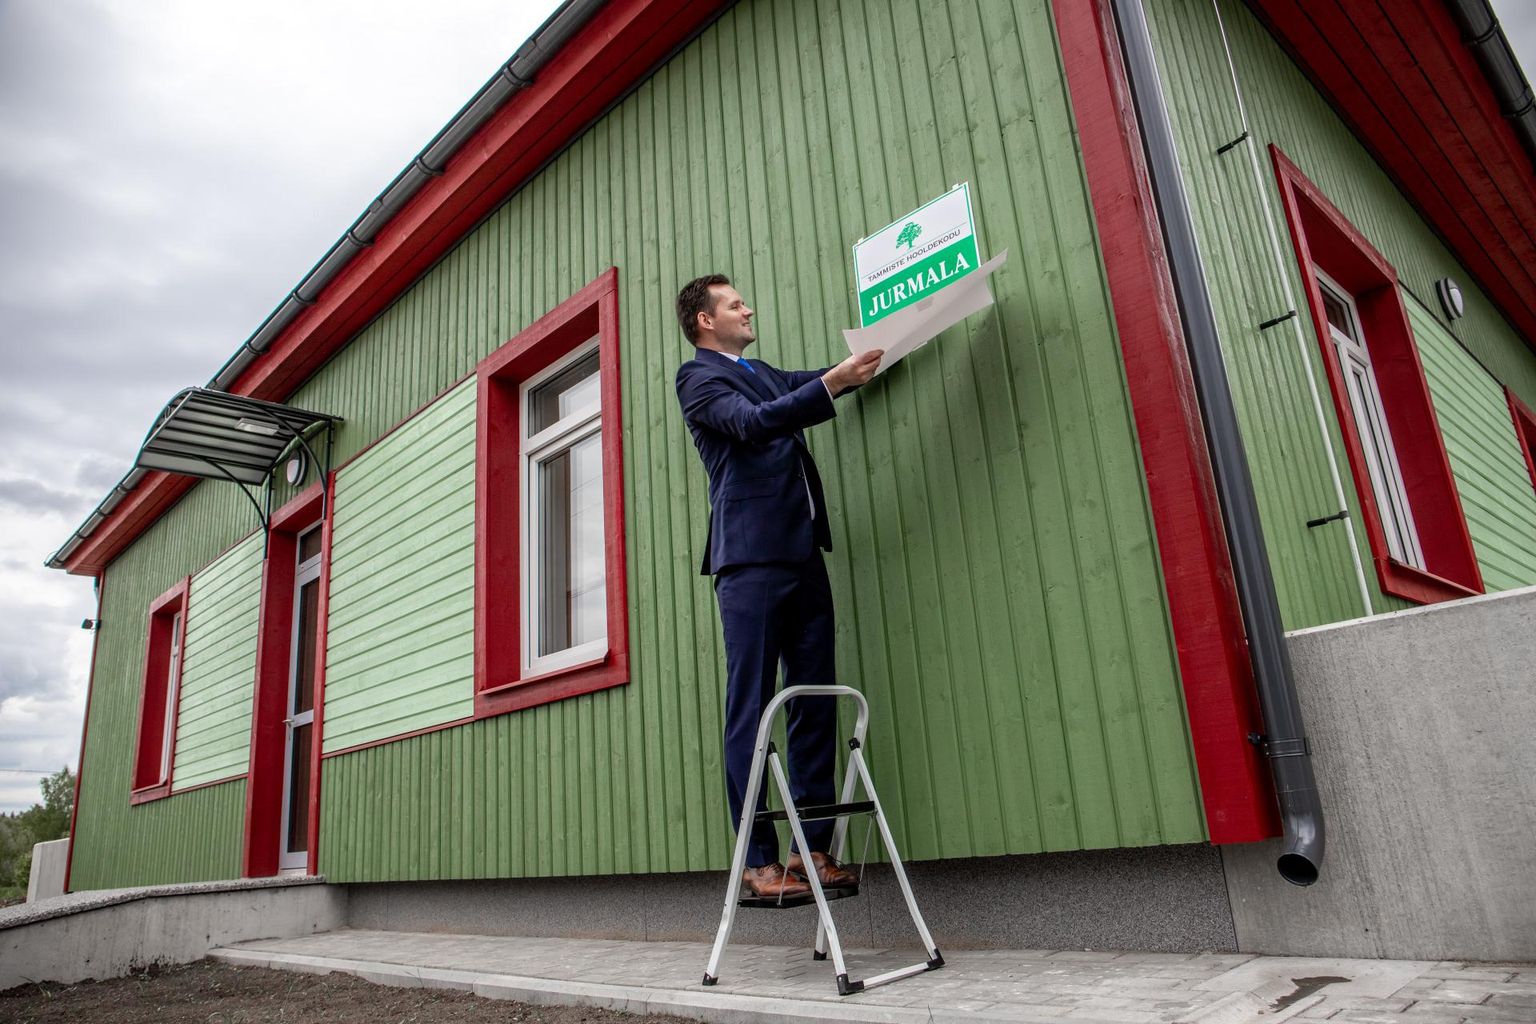 Tammiste hooldekodu kahe uue maja valmimine  -  hooldekodu juhataja Riido Villup tõmbas katte Jurmala nime kandva maja nimesildilt.